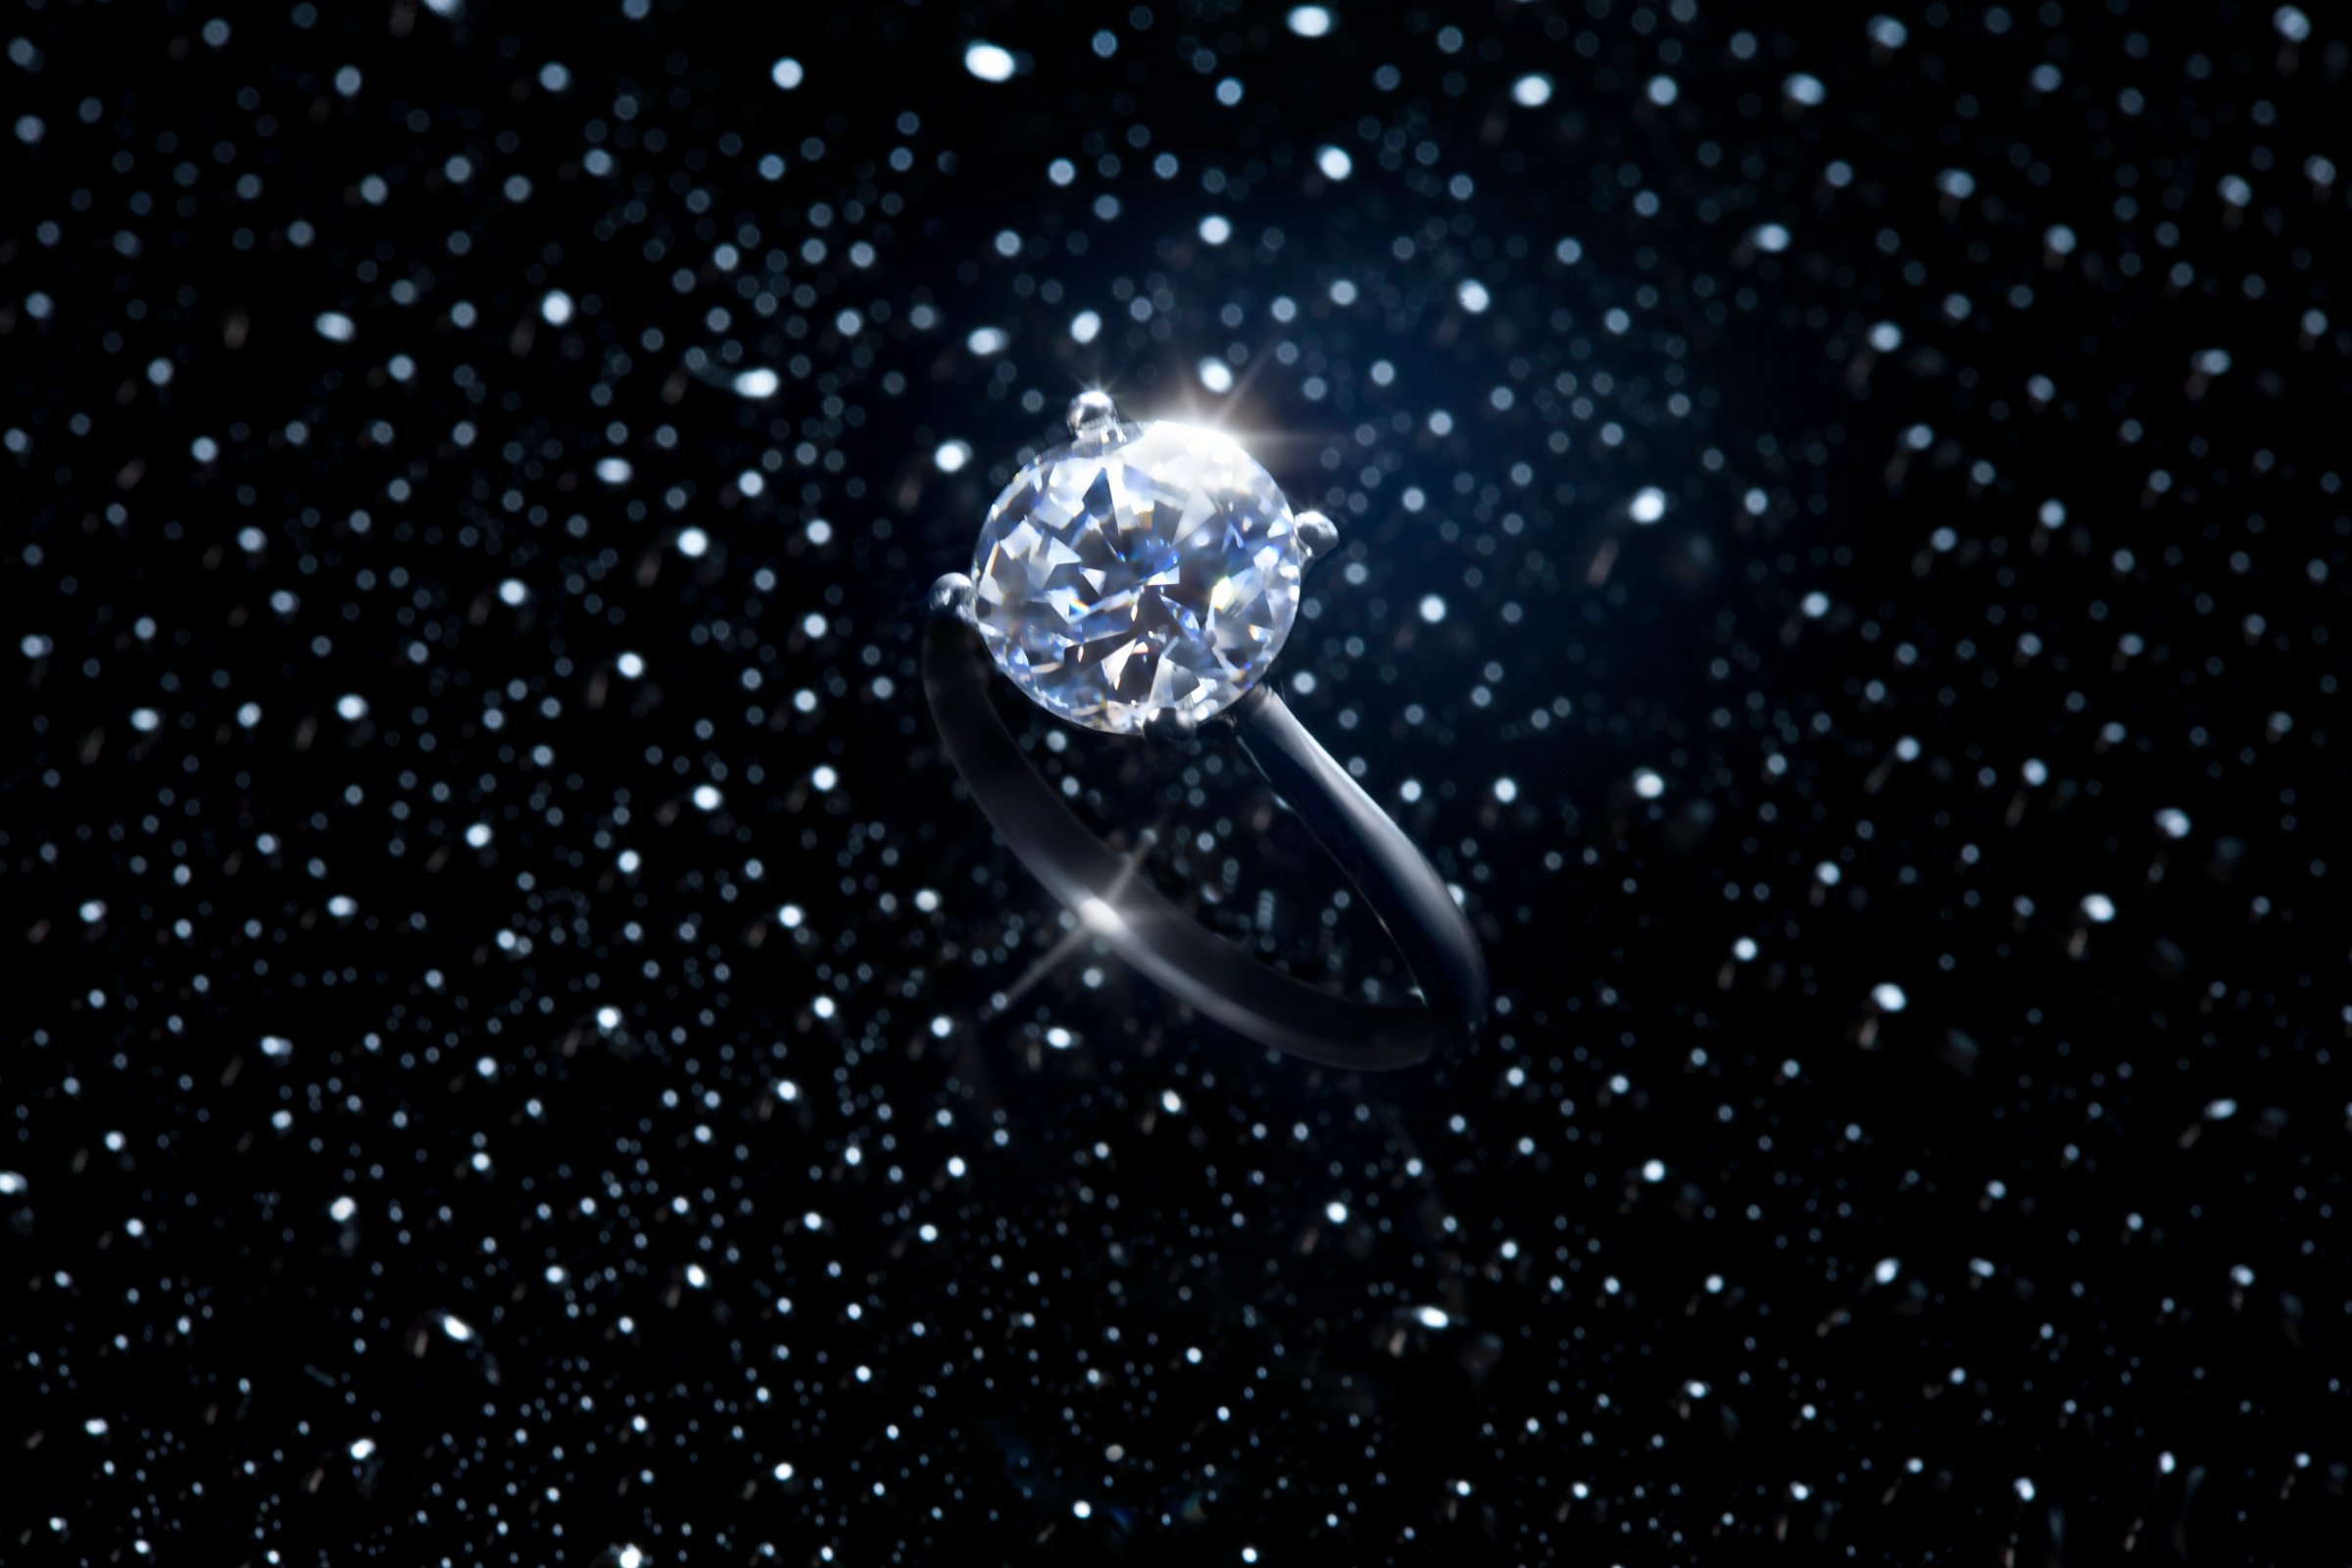 Diamond ring against starry sky